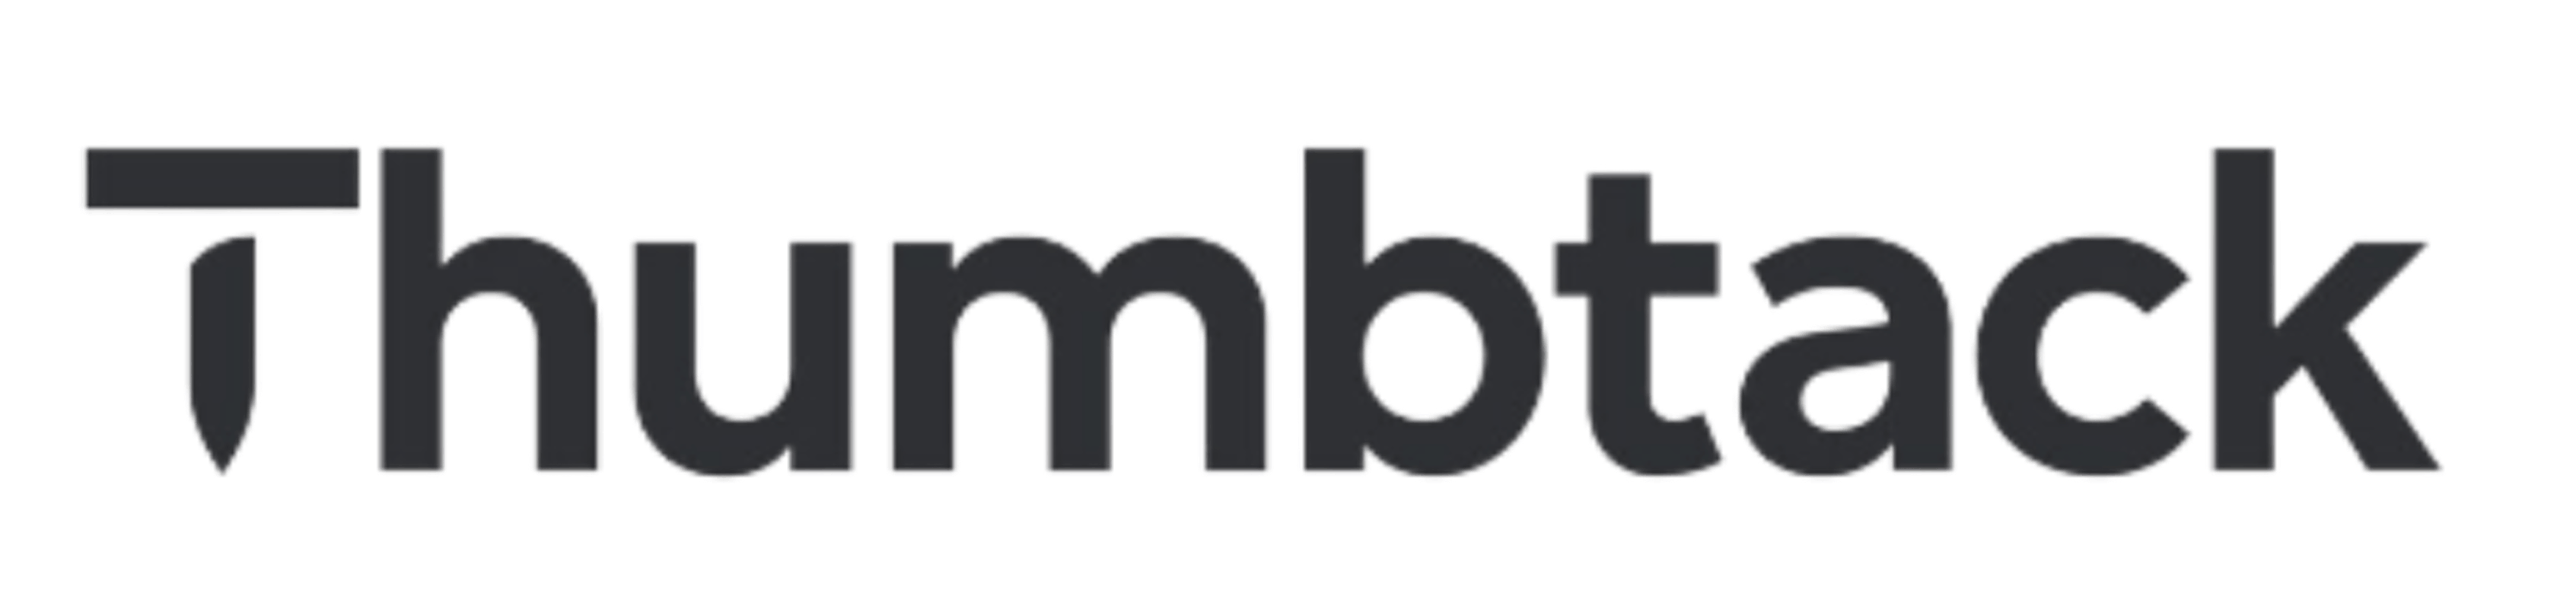 Thumbtack-Logo-Large